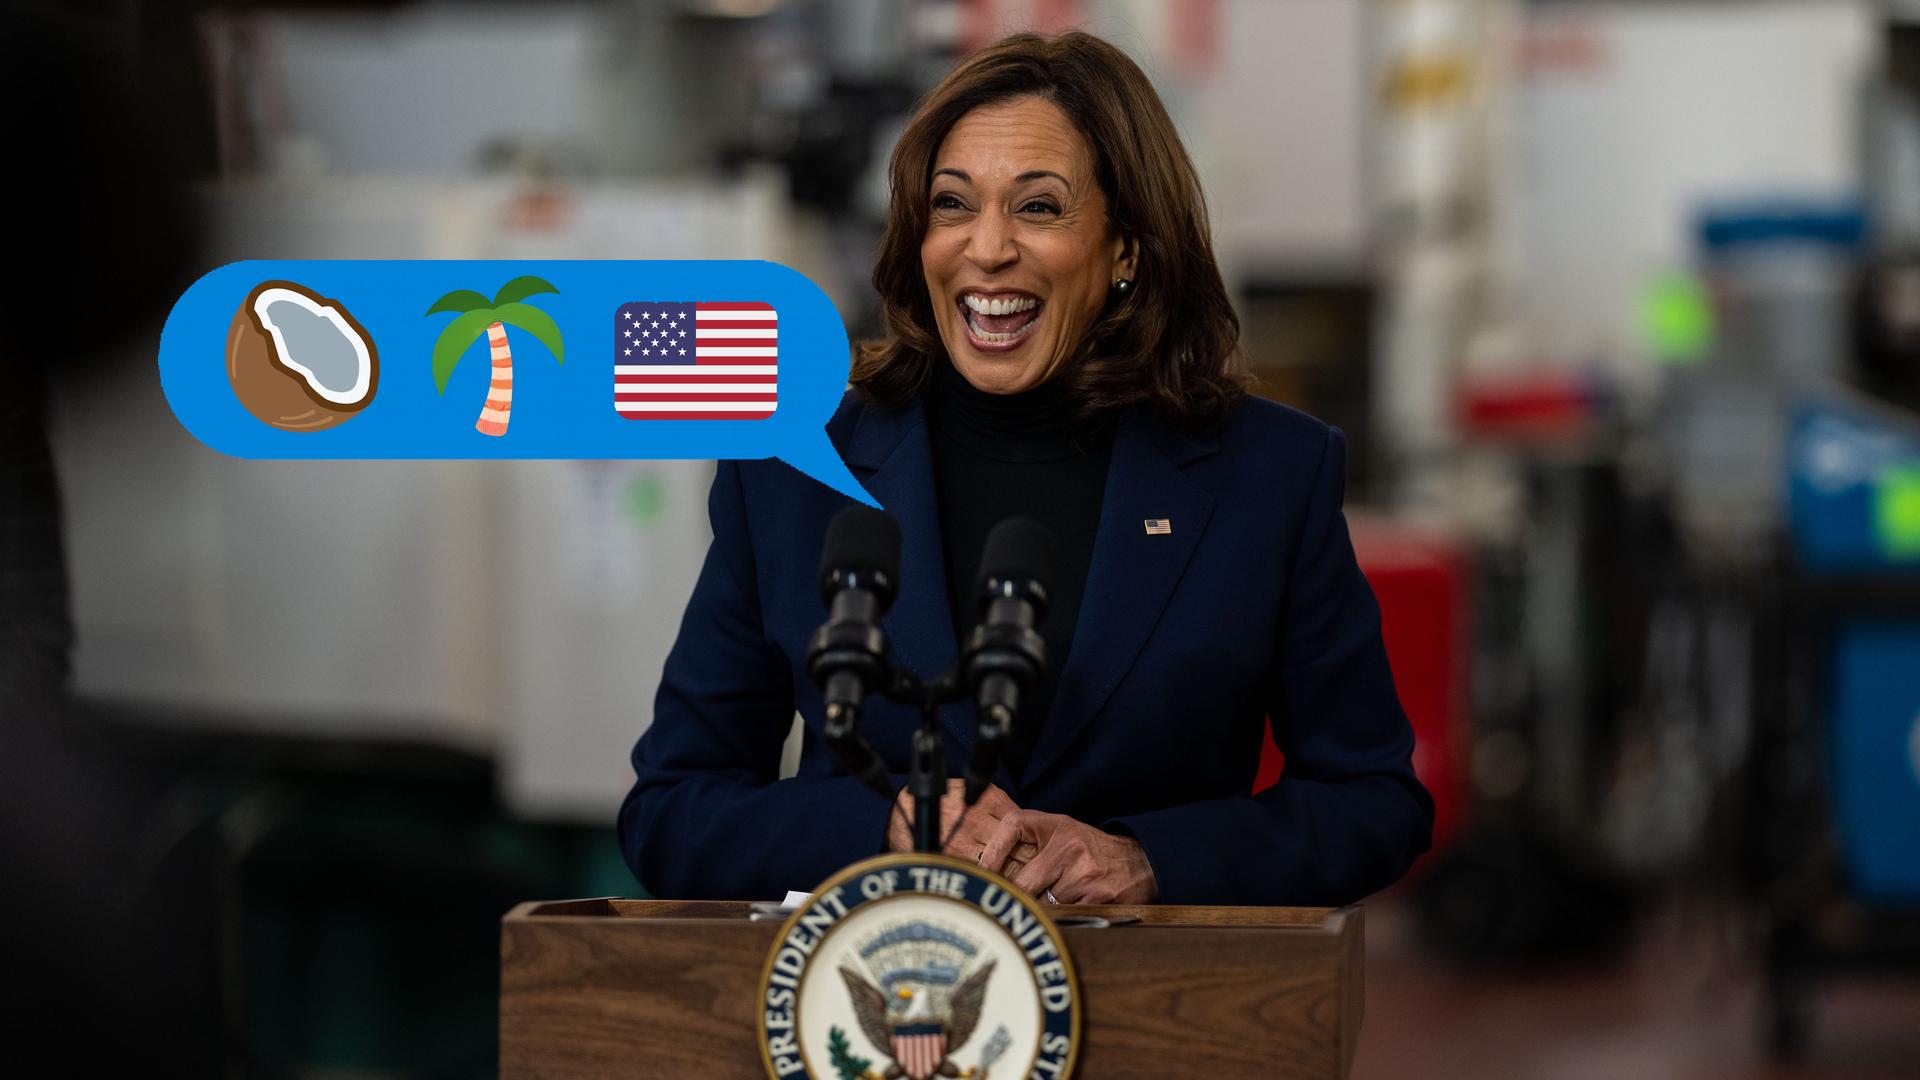 Kamala Harris steht hinter einem Podium und lacht. Ins Bild eingefügt ist eine Sprechblase, darin die Emojis für eine Kokosnuss, eine Palme und die Flagge der Vereinigten Staaten.